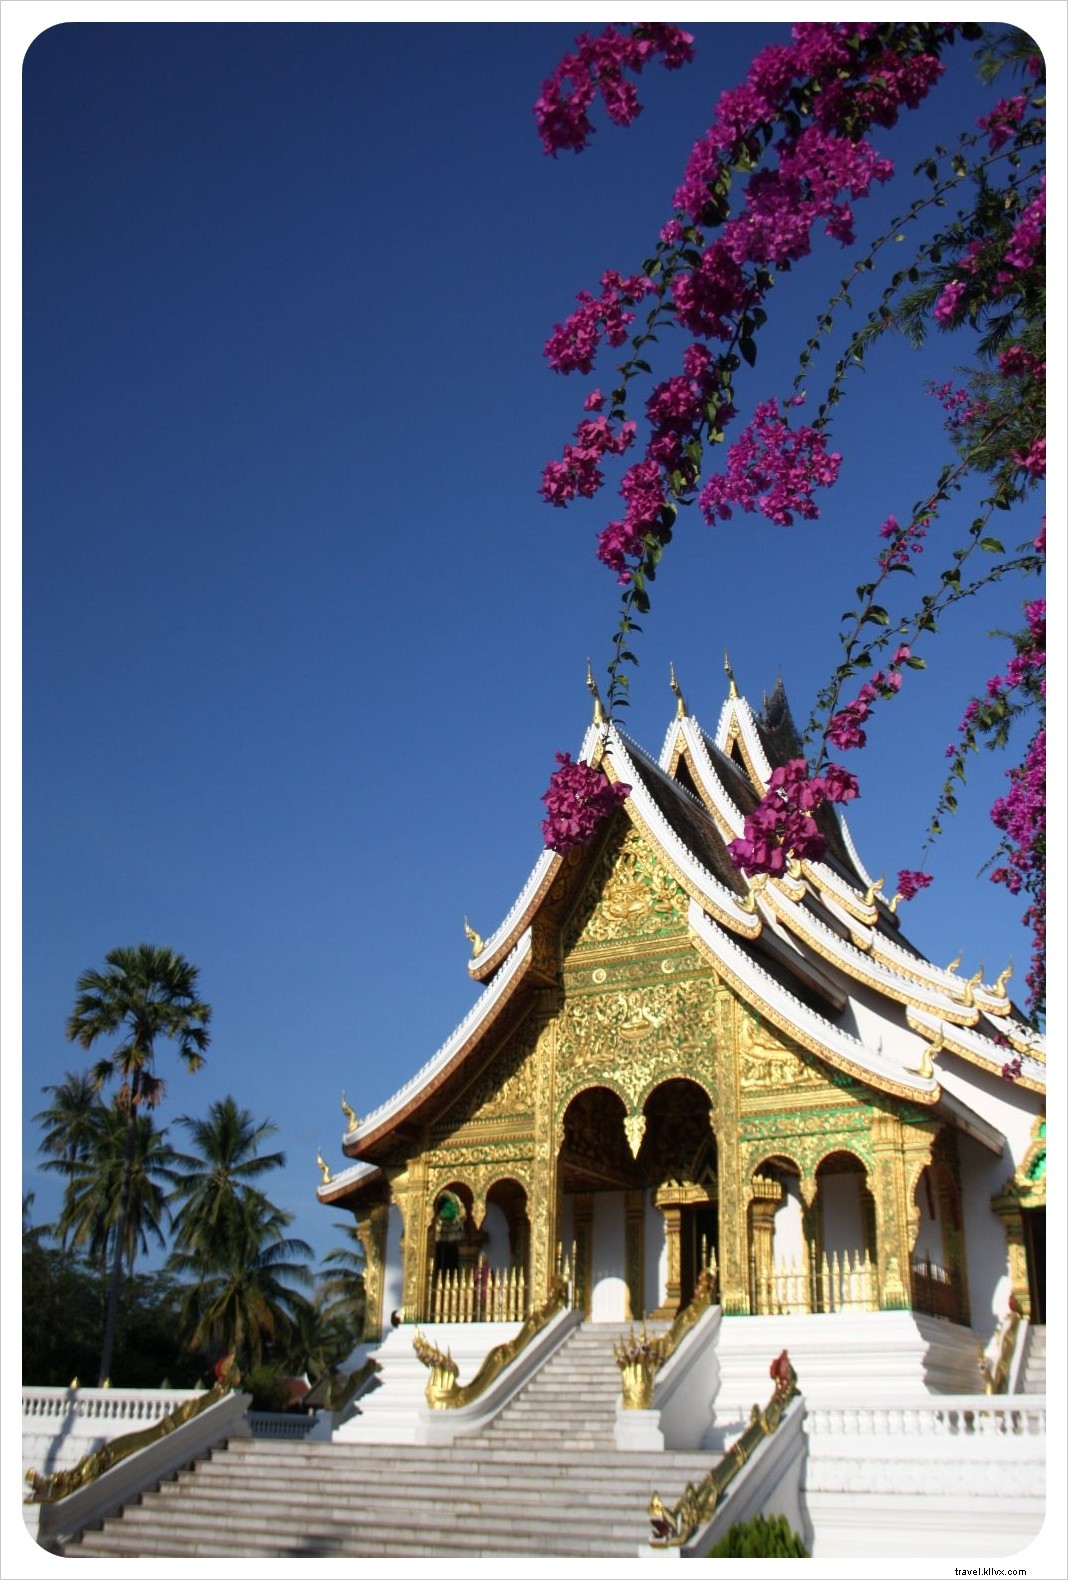 33 coisas que amamos no Laos